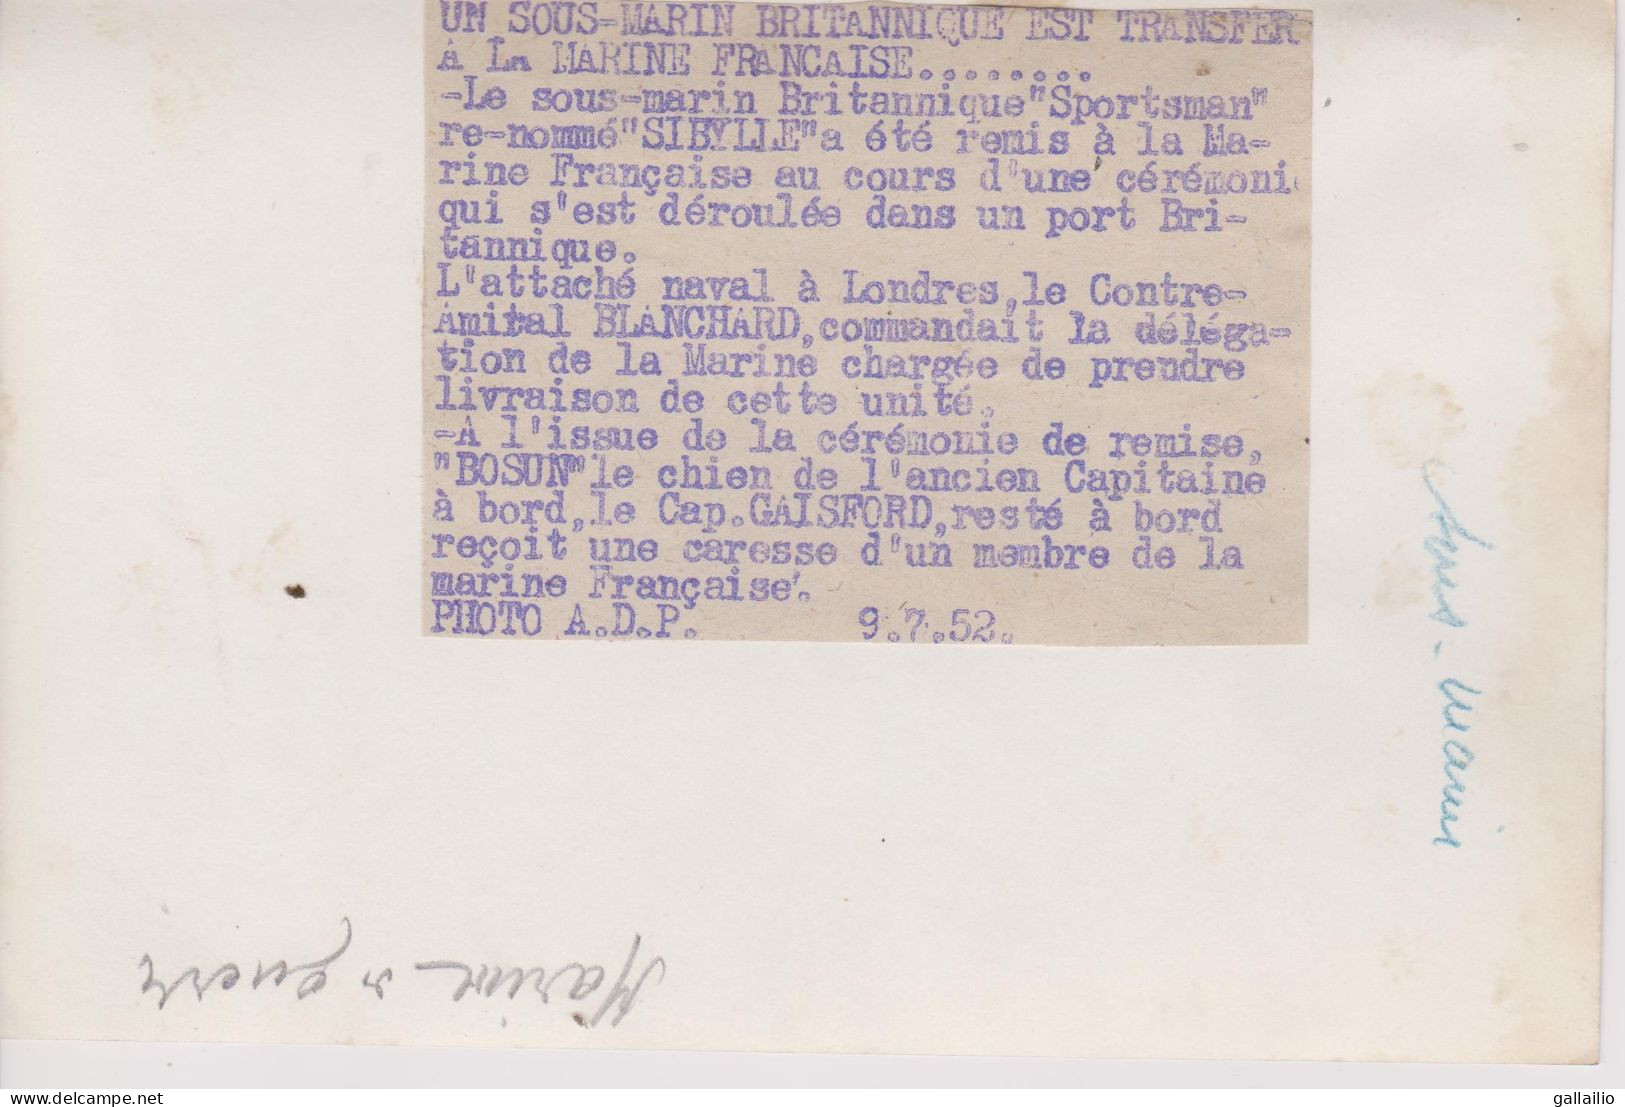 PHOTO PRESSE LE CHIEN DU CAPITAINE DU SPORSMAN PHOTO A D P JUILLET 1952 FORMAT 18 X 13 CMS - Barche